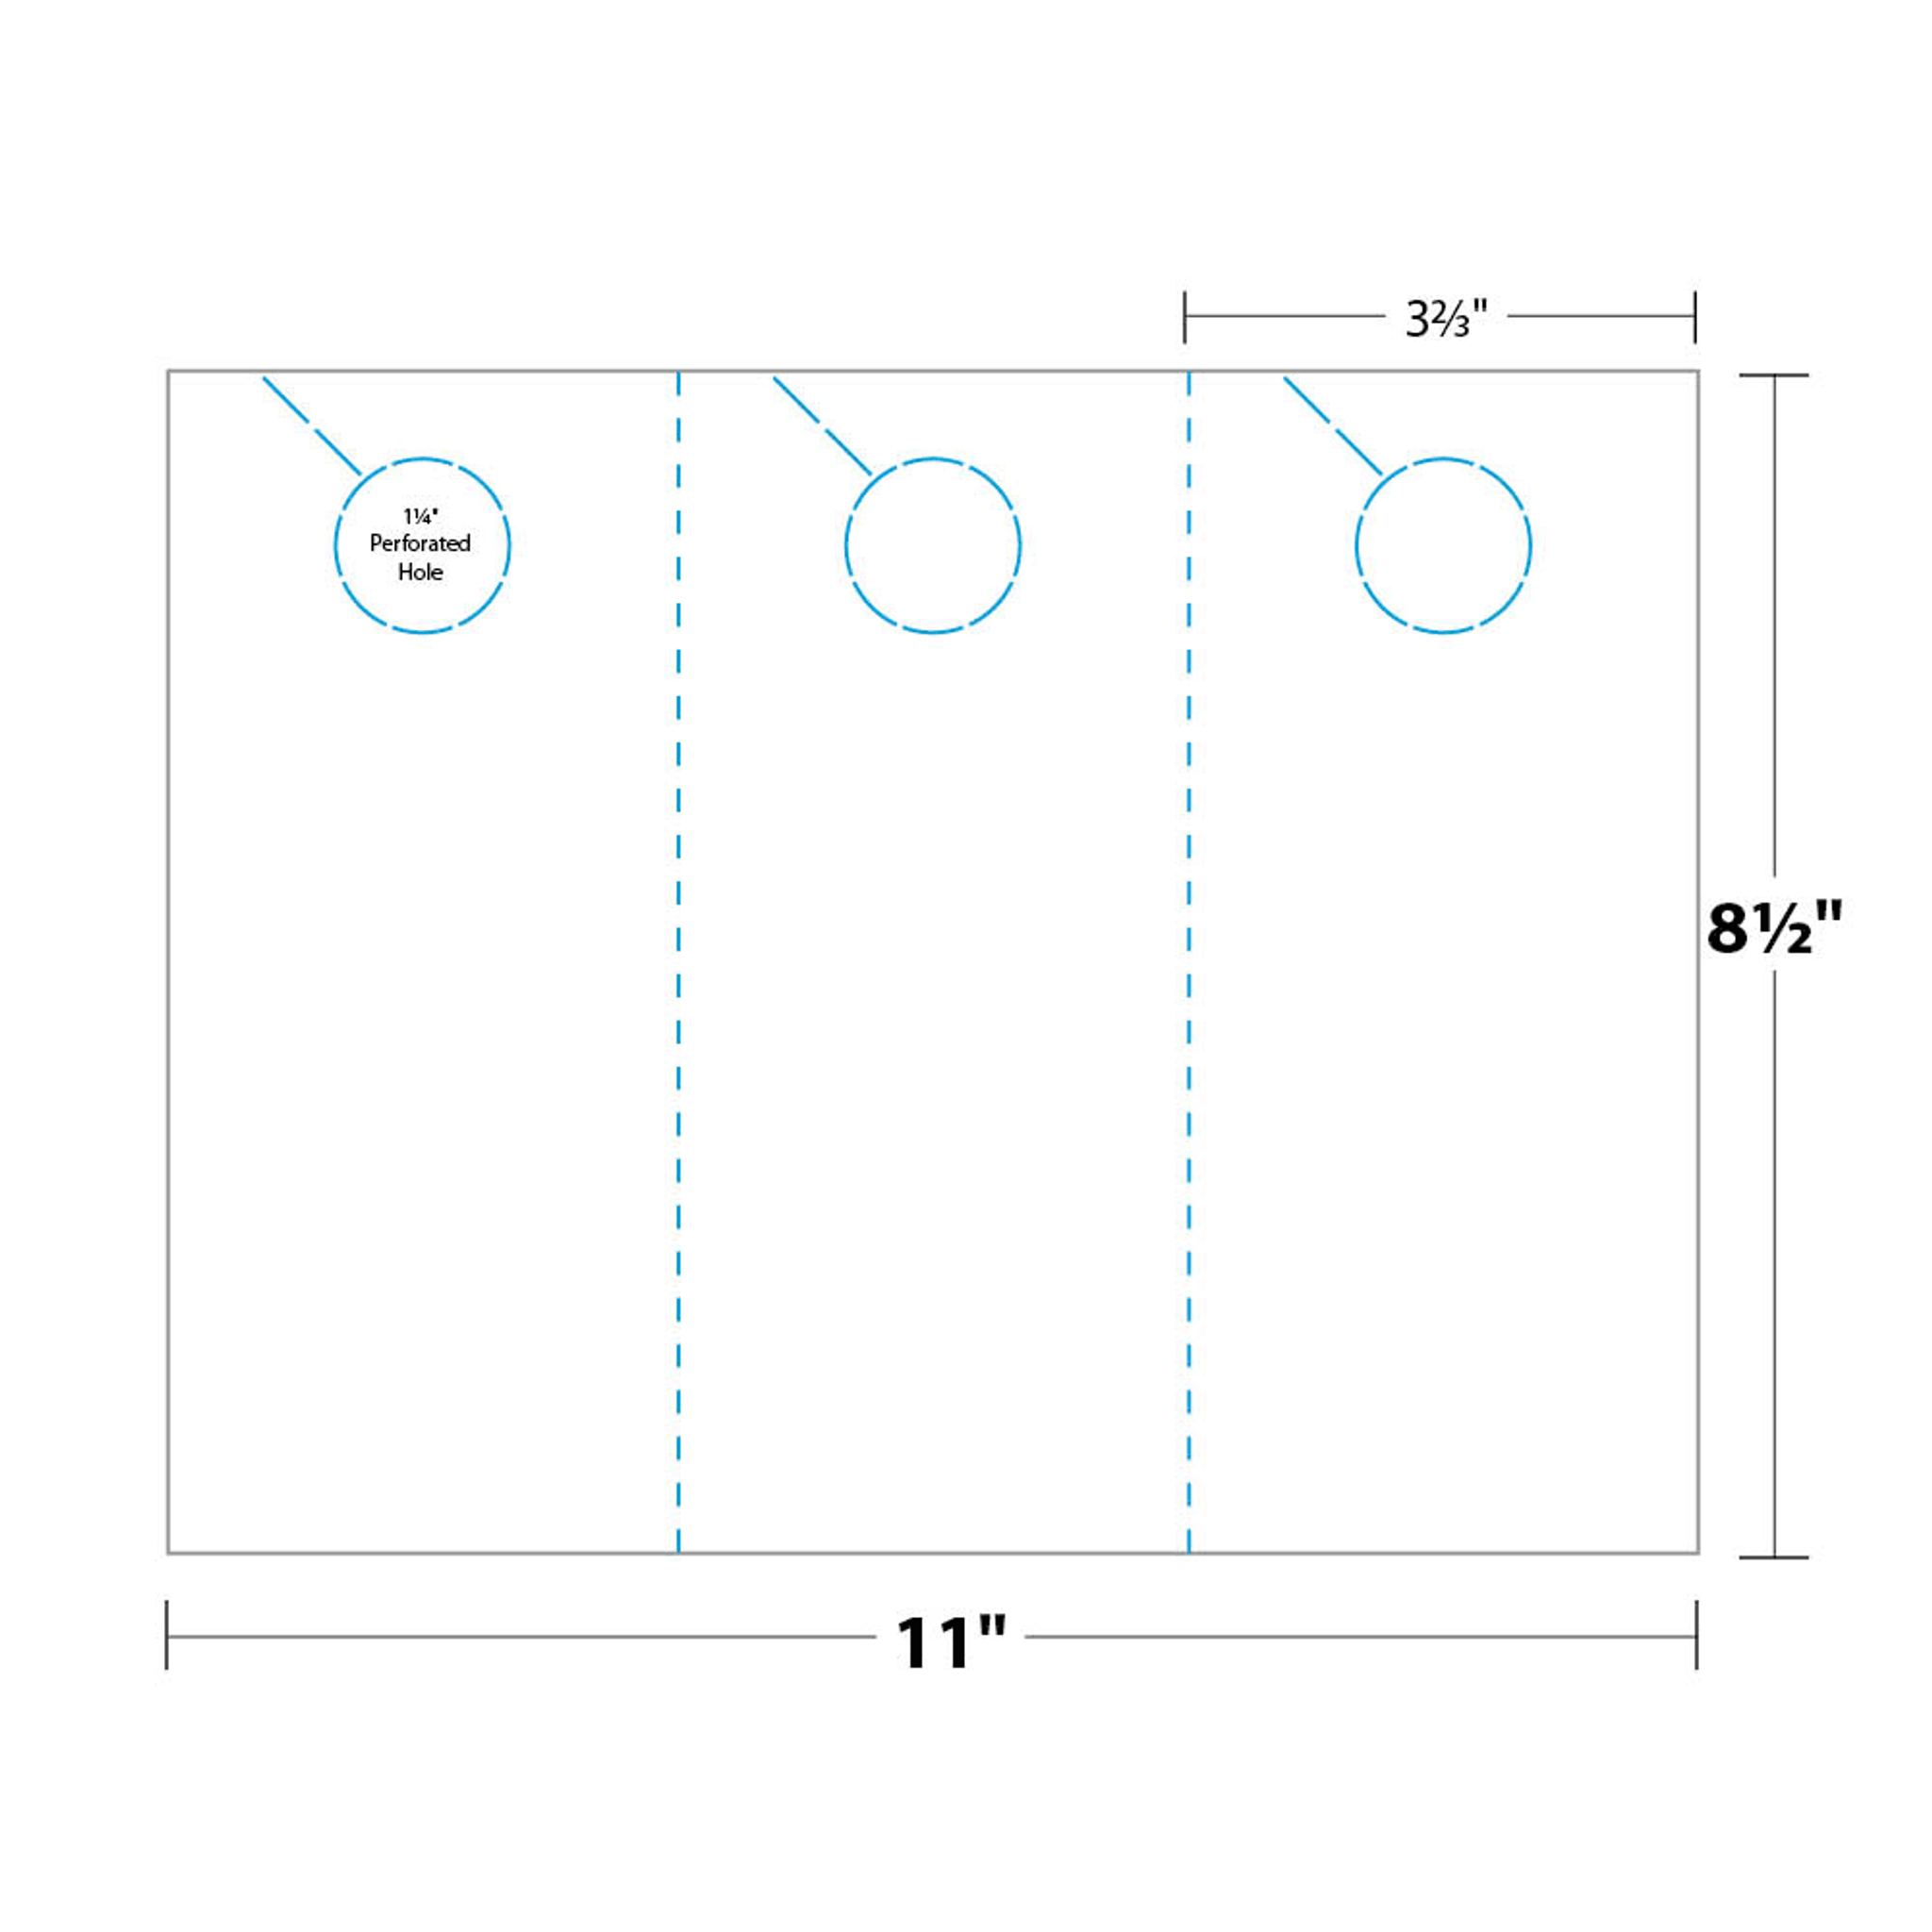 Custom Printable Door Hangers